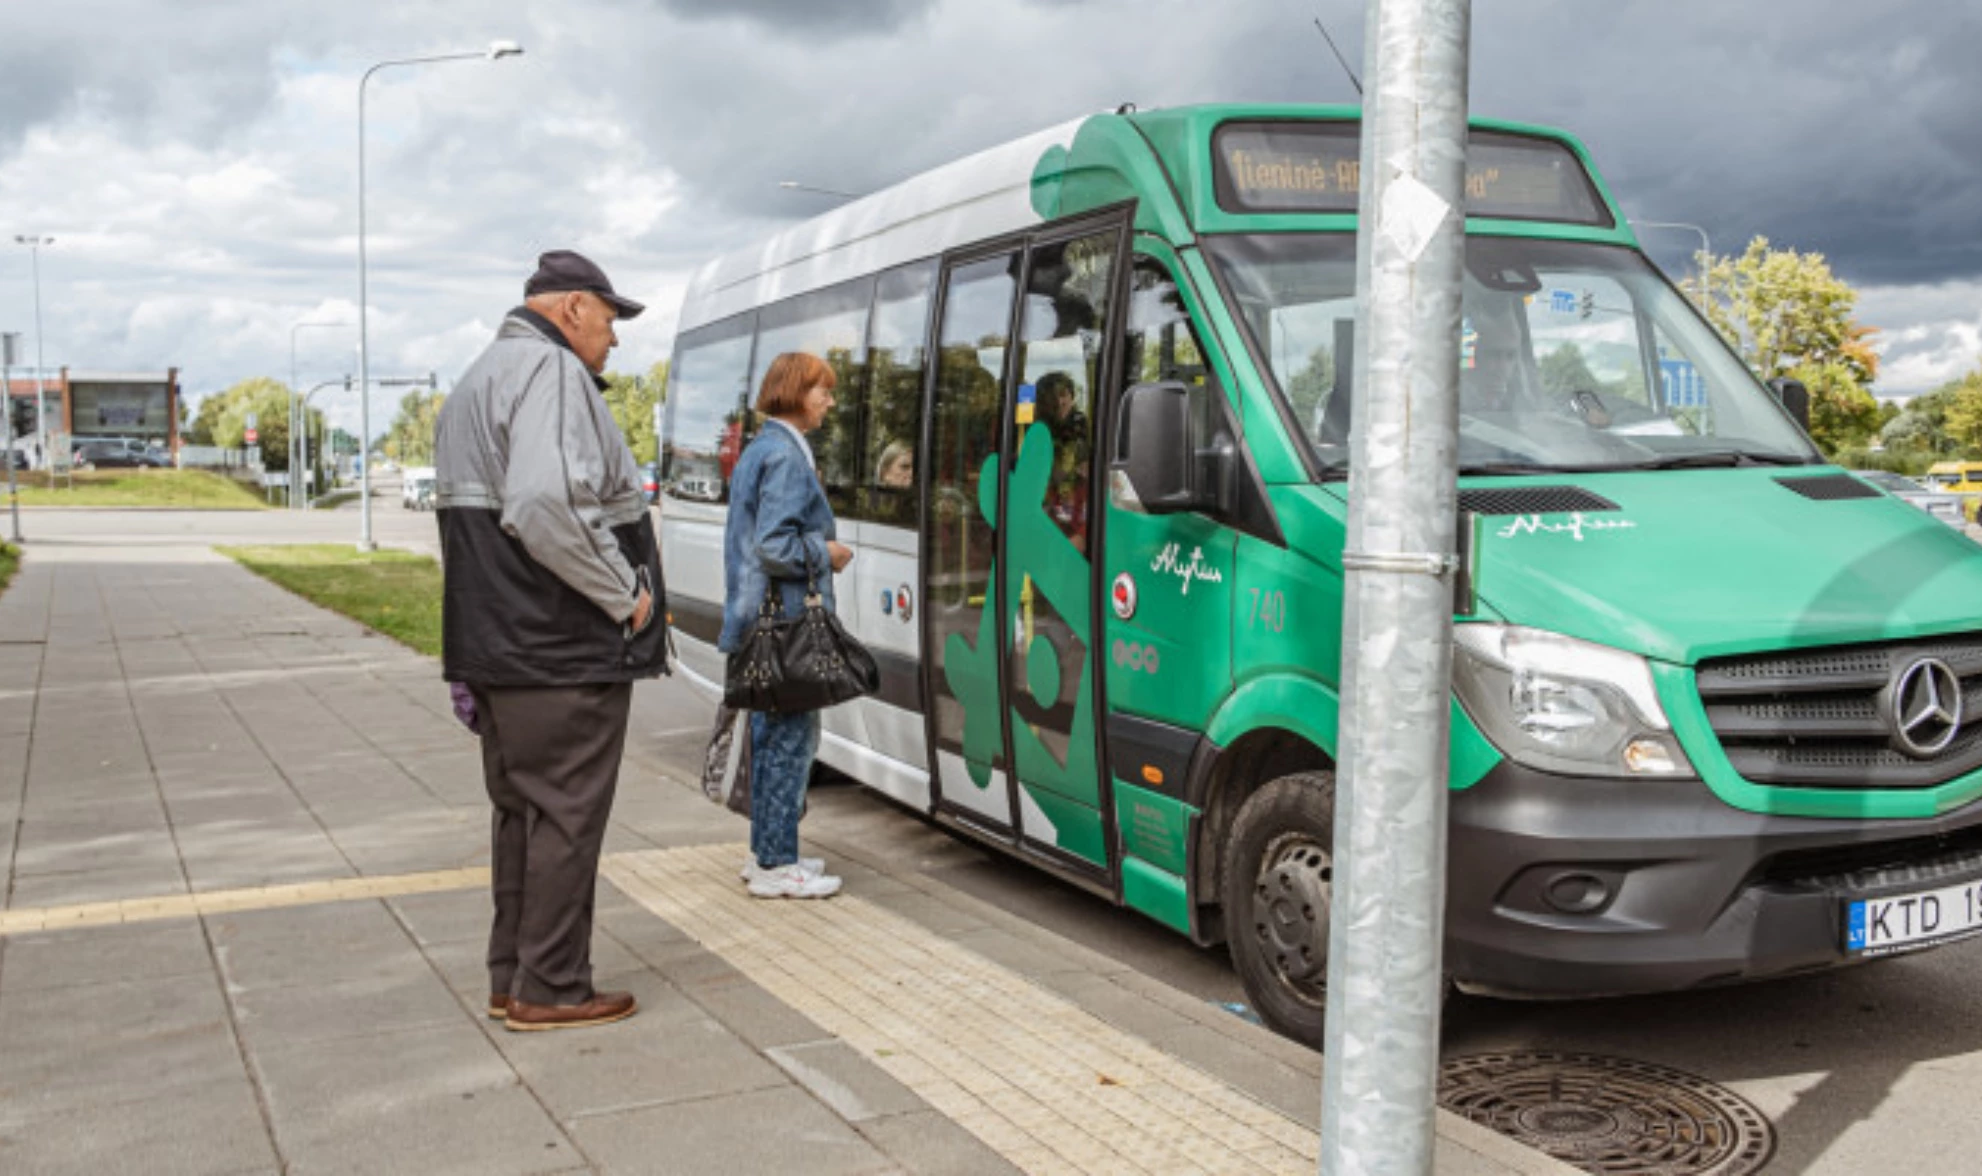 Tarptautinė pagyvenusių žmonių diena: senjorai Alytaus miesto viešuoju transportu važiuos už 1 euro centą